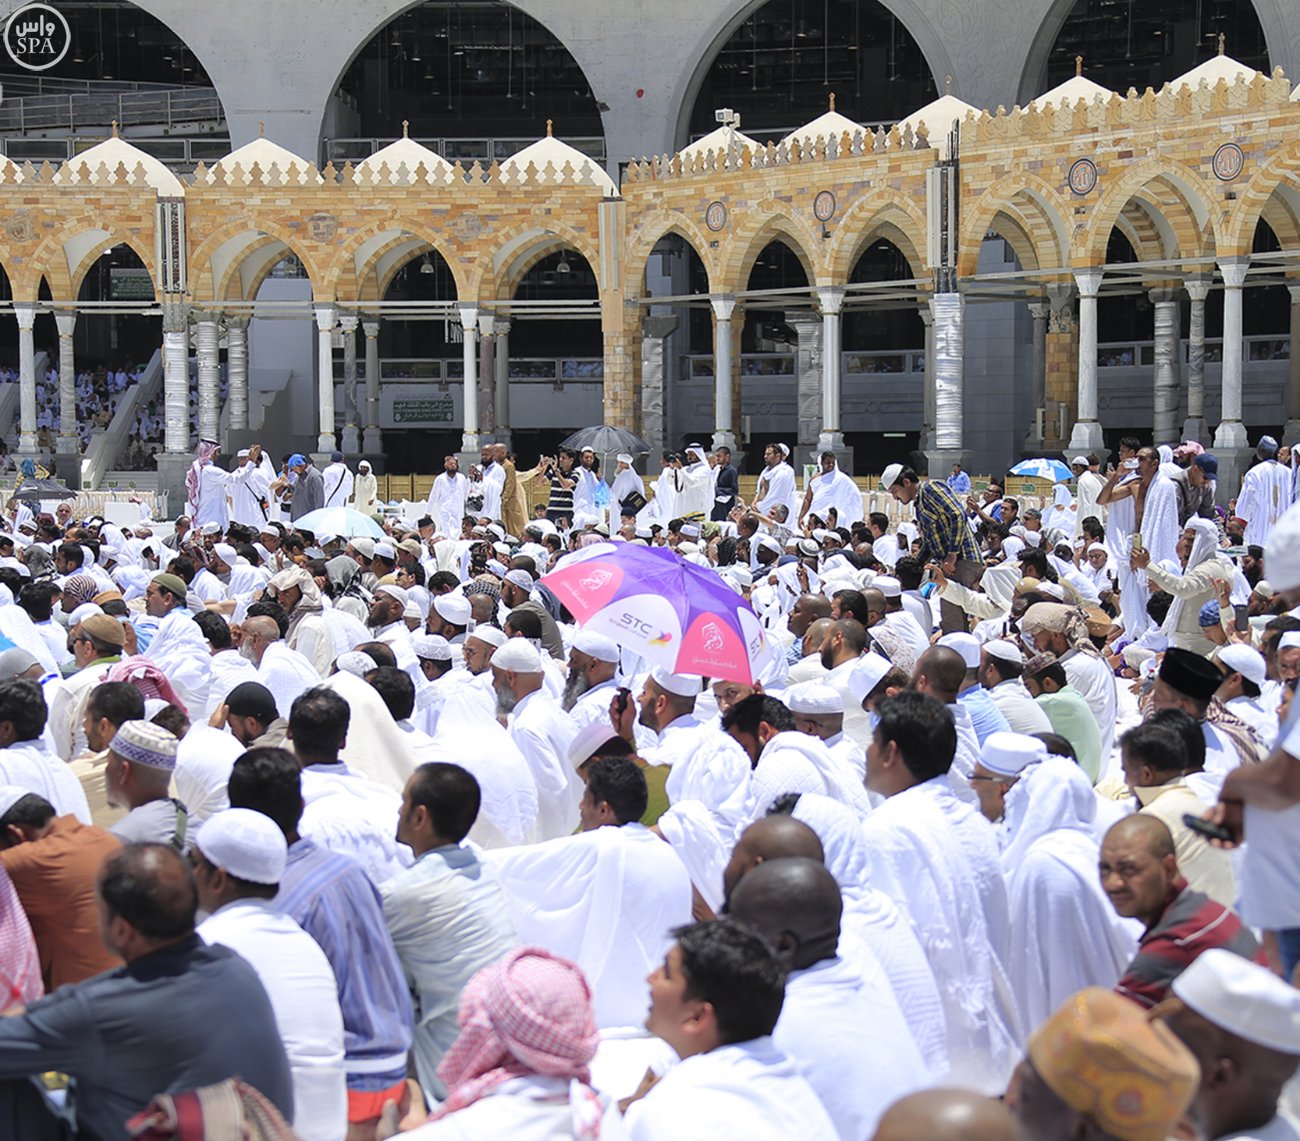 ضيوف الرحمن يؤدون أول صلاة جمعة بالمسجد الحرام بعد شهر رمضان المبارك